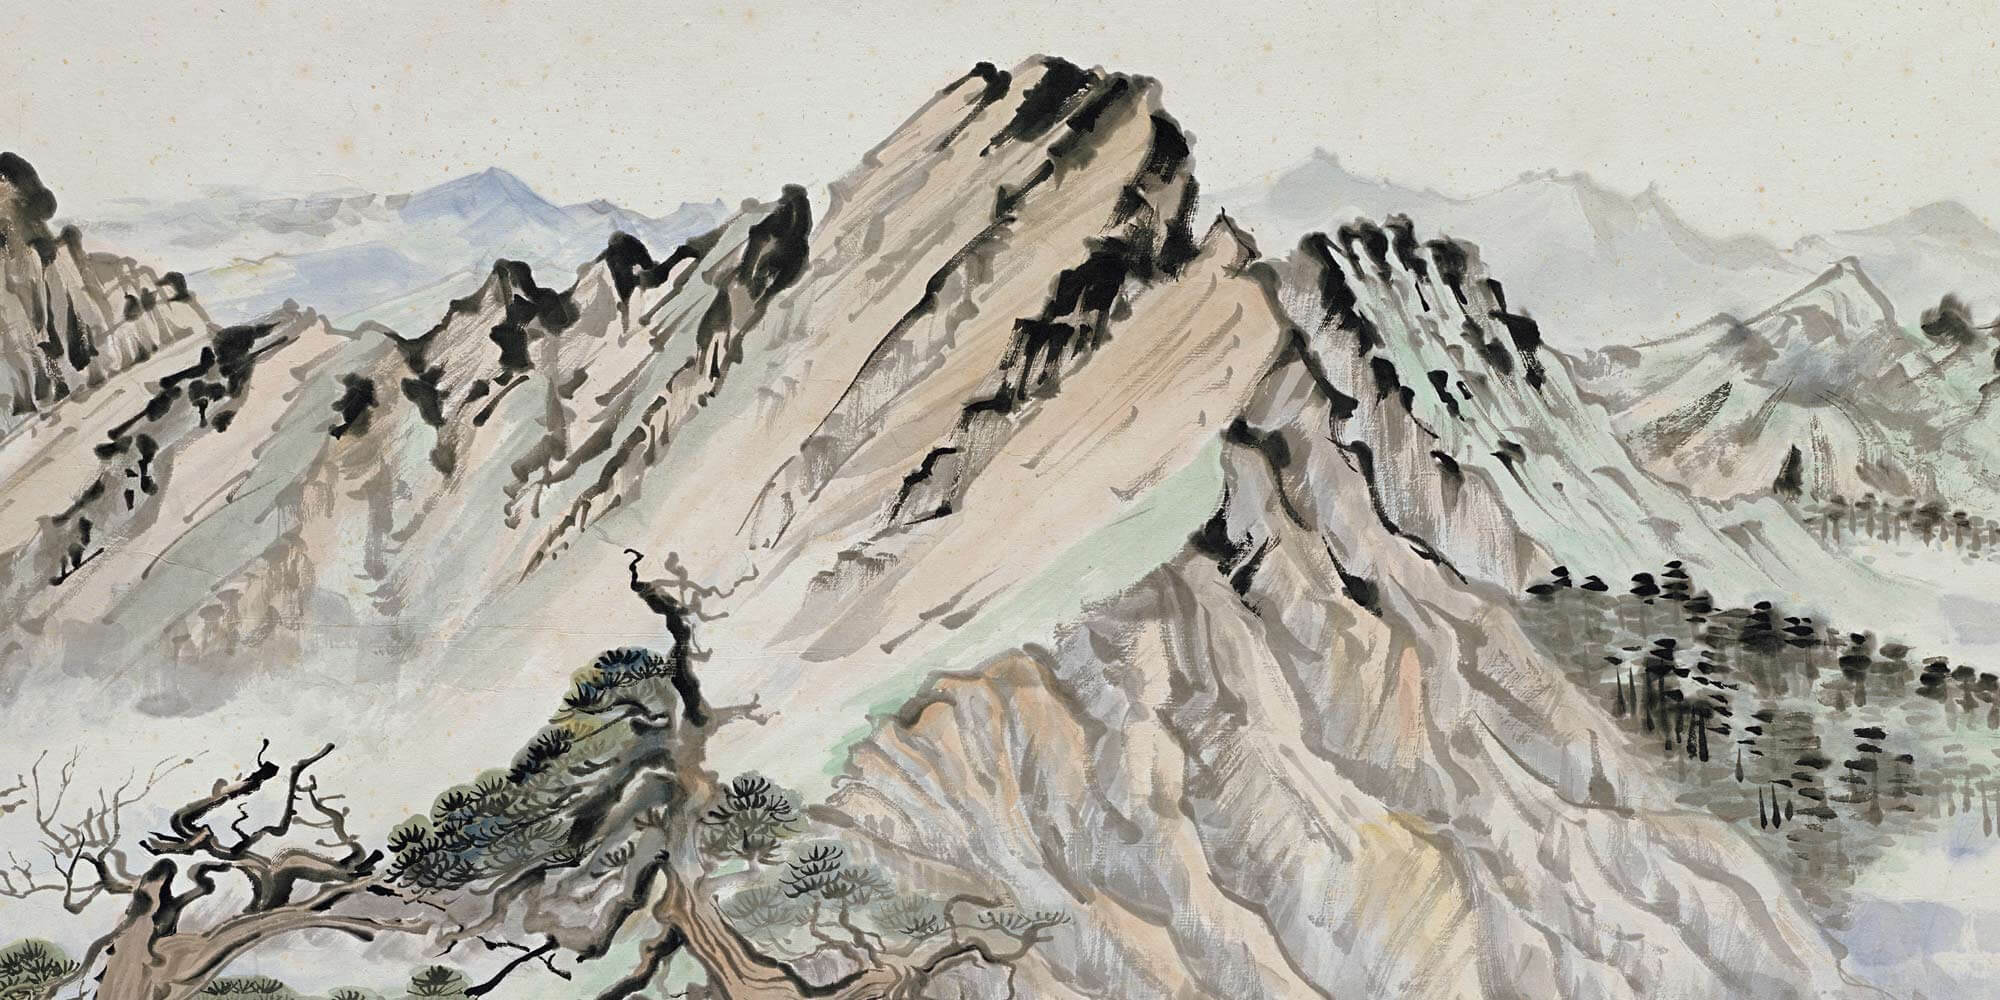 Nan Mountains Wallpapers